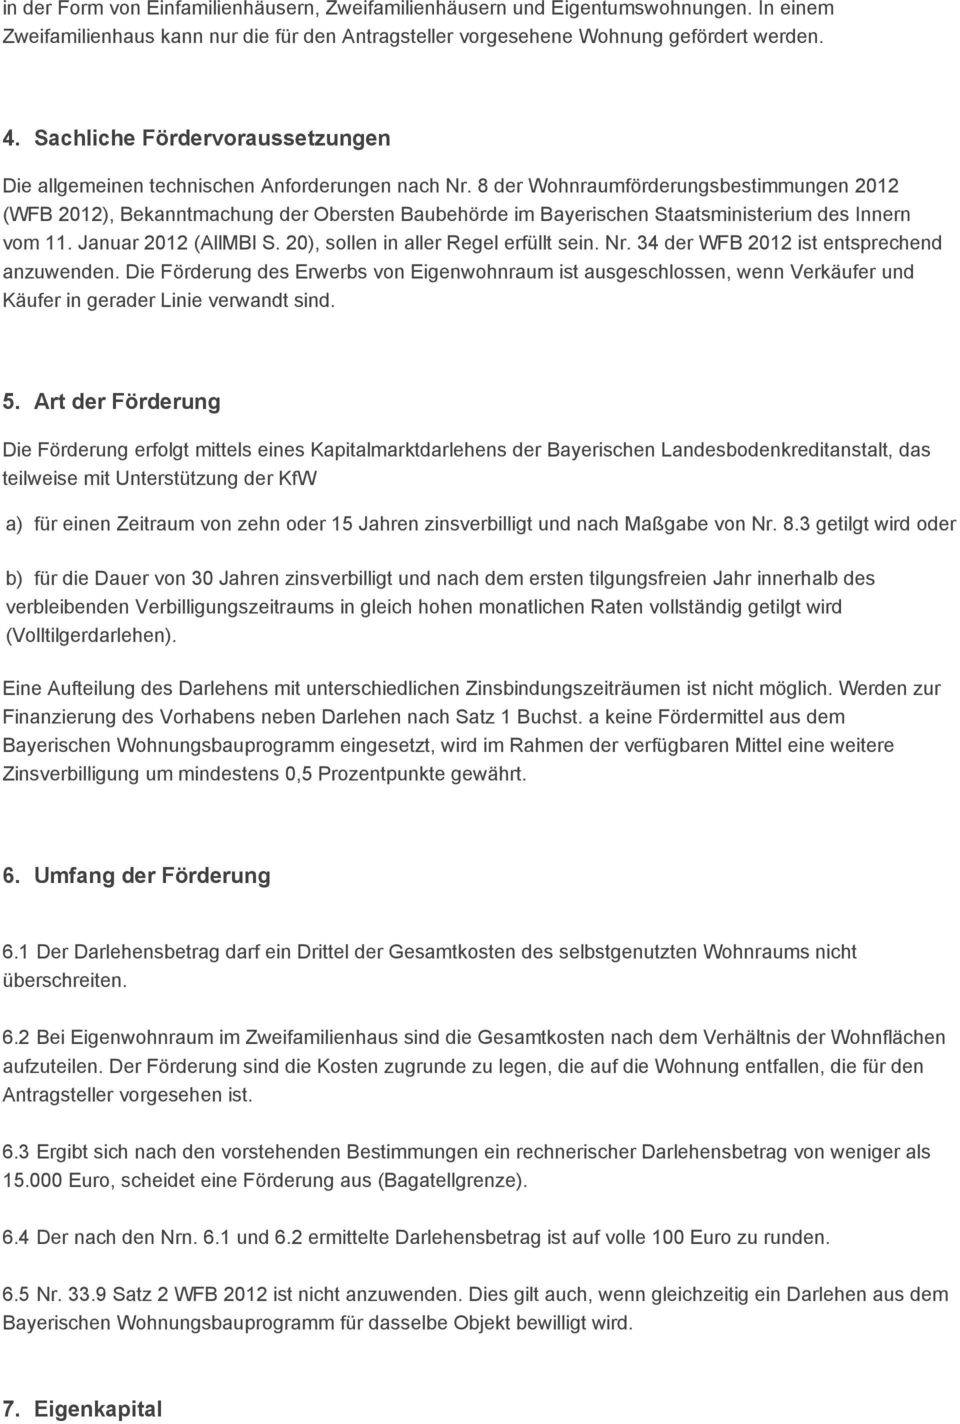 8 der Wohnraumförderungsbestimmungen 2012 (WFB 2012), Bekanntmachung der Obersten Baubehörde im Bayerischen Staatsministerium des Innern vom 11. Januar 2012 (AllMBl S.